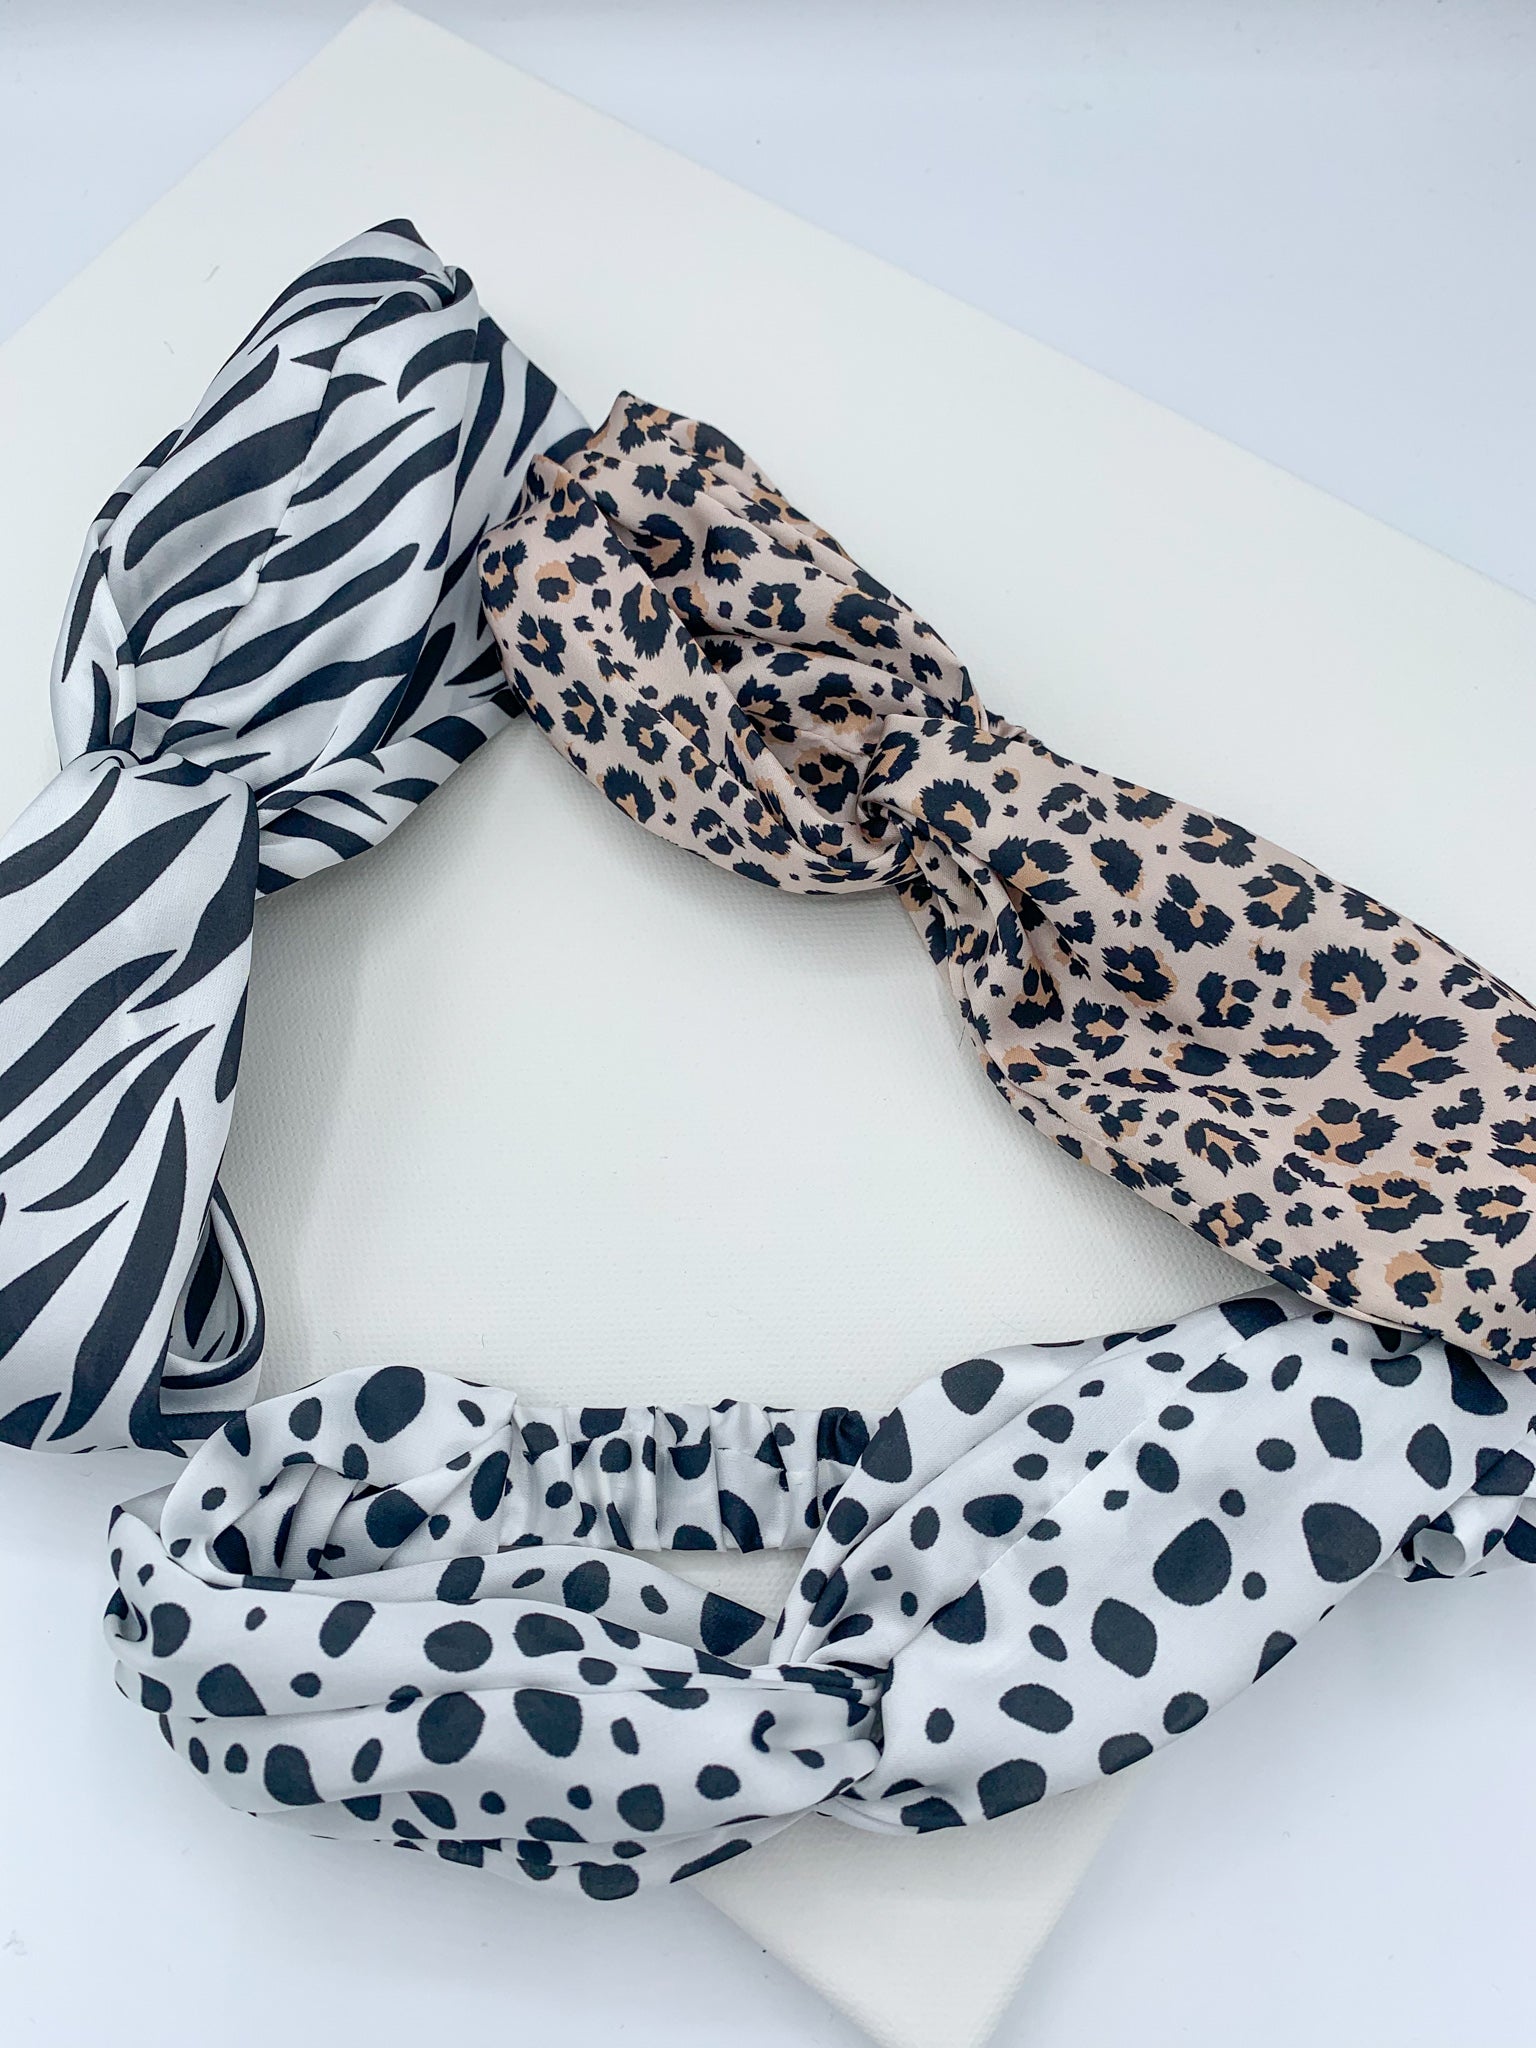 Leopard Print Headband